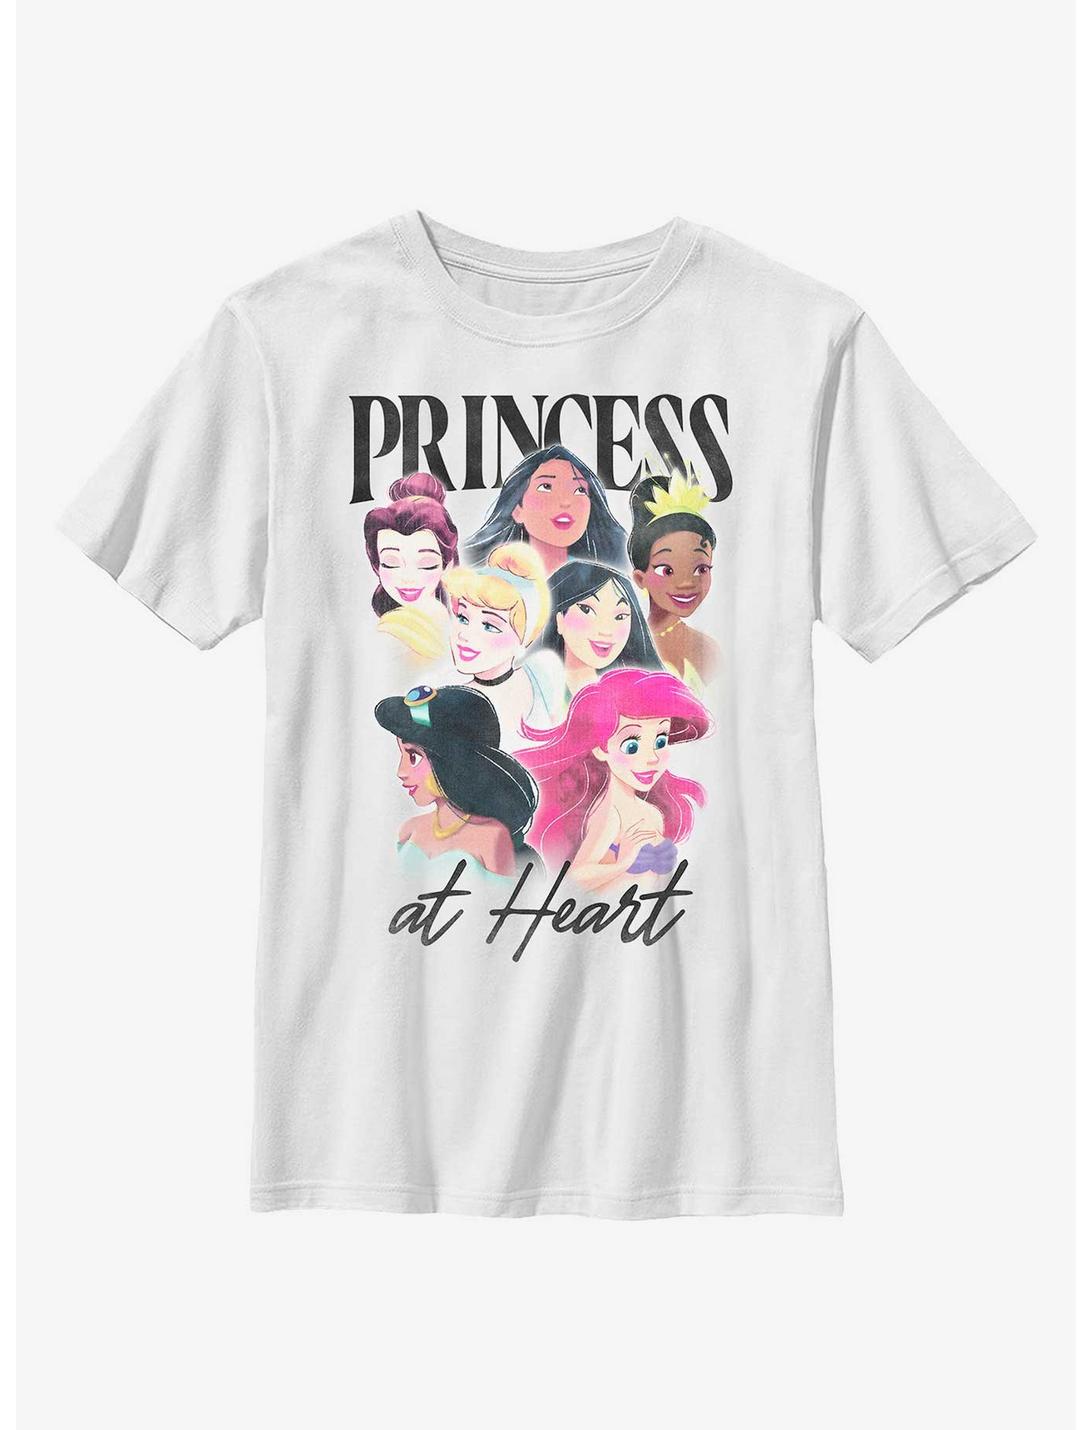 Disney Princesses Princess At Heart Youth T-Shirt, WHITE, hi-res